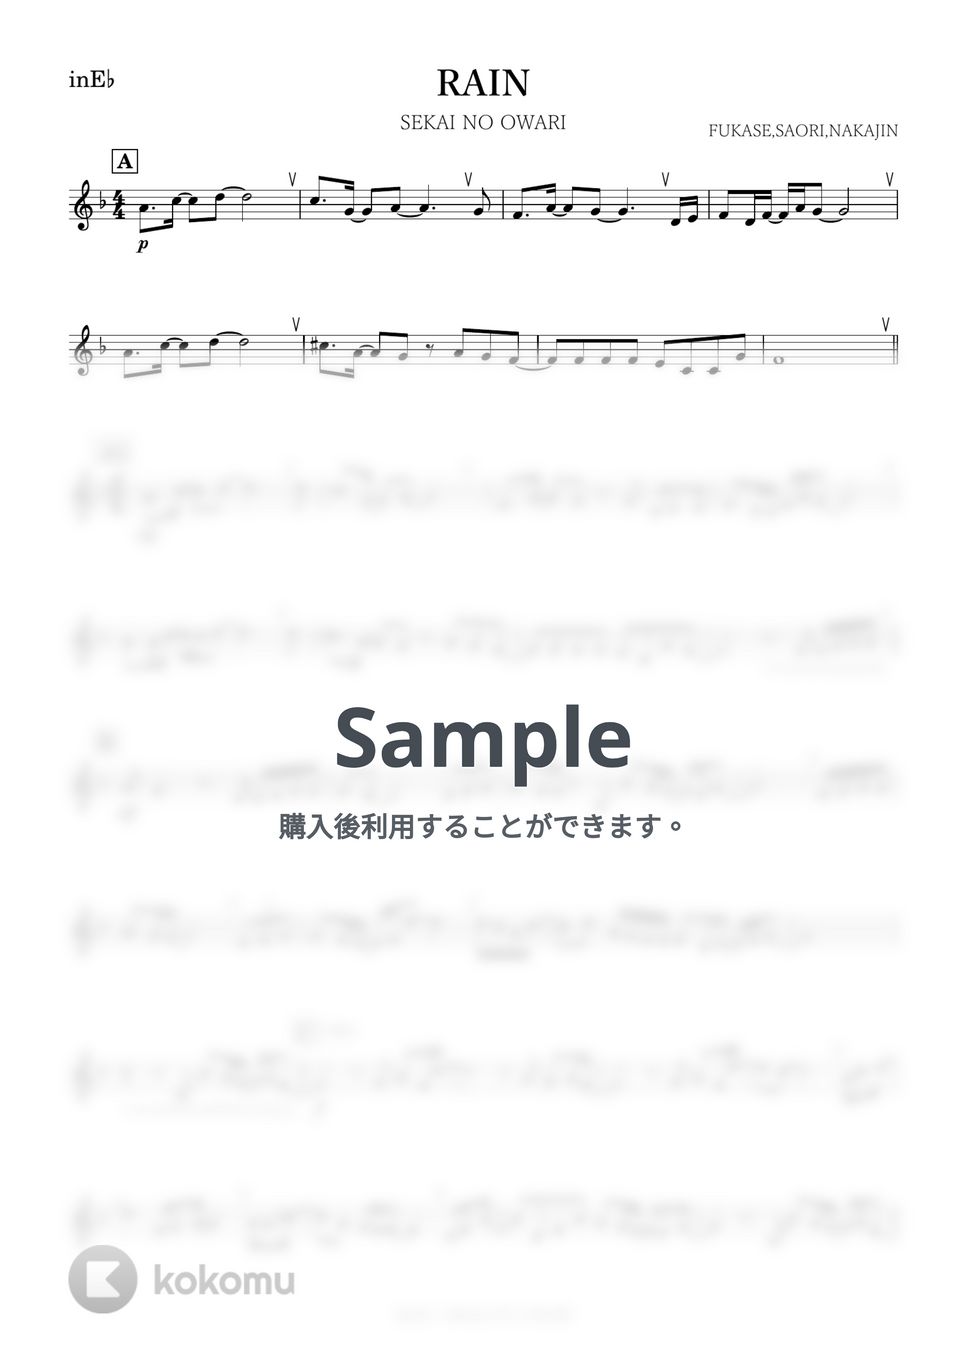 SEKAI NO OWARI - RAIN (E♭) by kanamusic